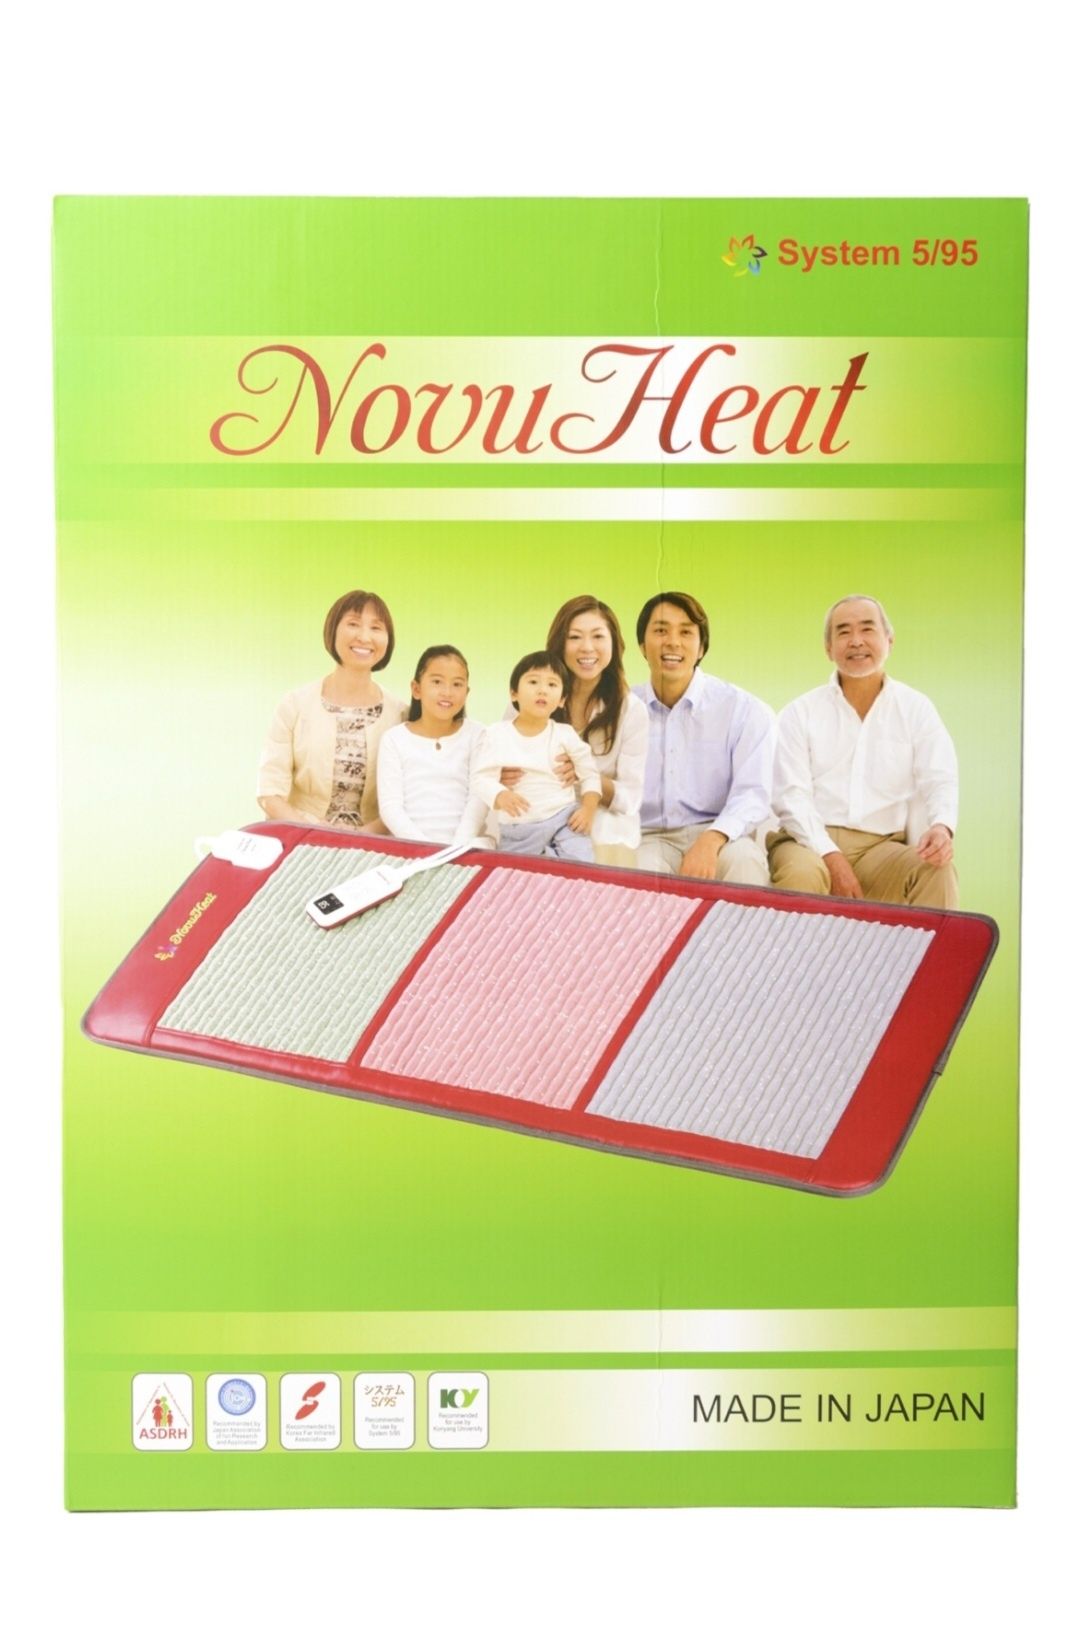 NovuHeat (НовуХит) – массажное оборудование для здоровья ног.

NovuMed